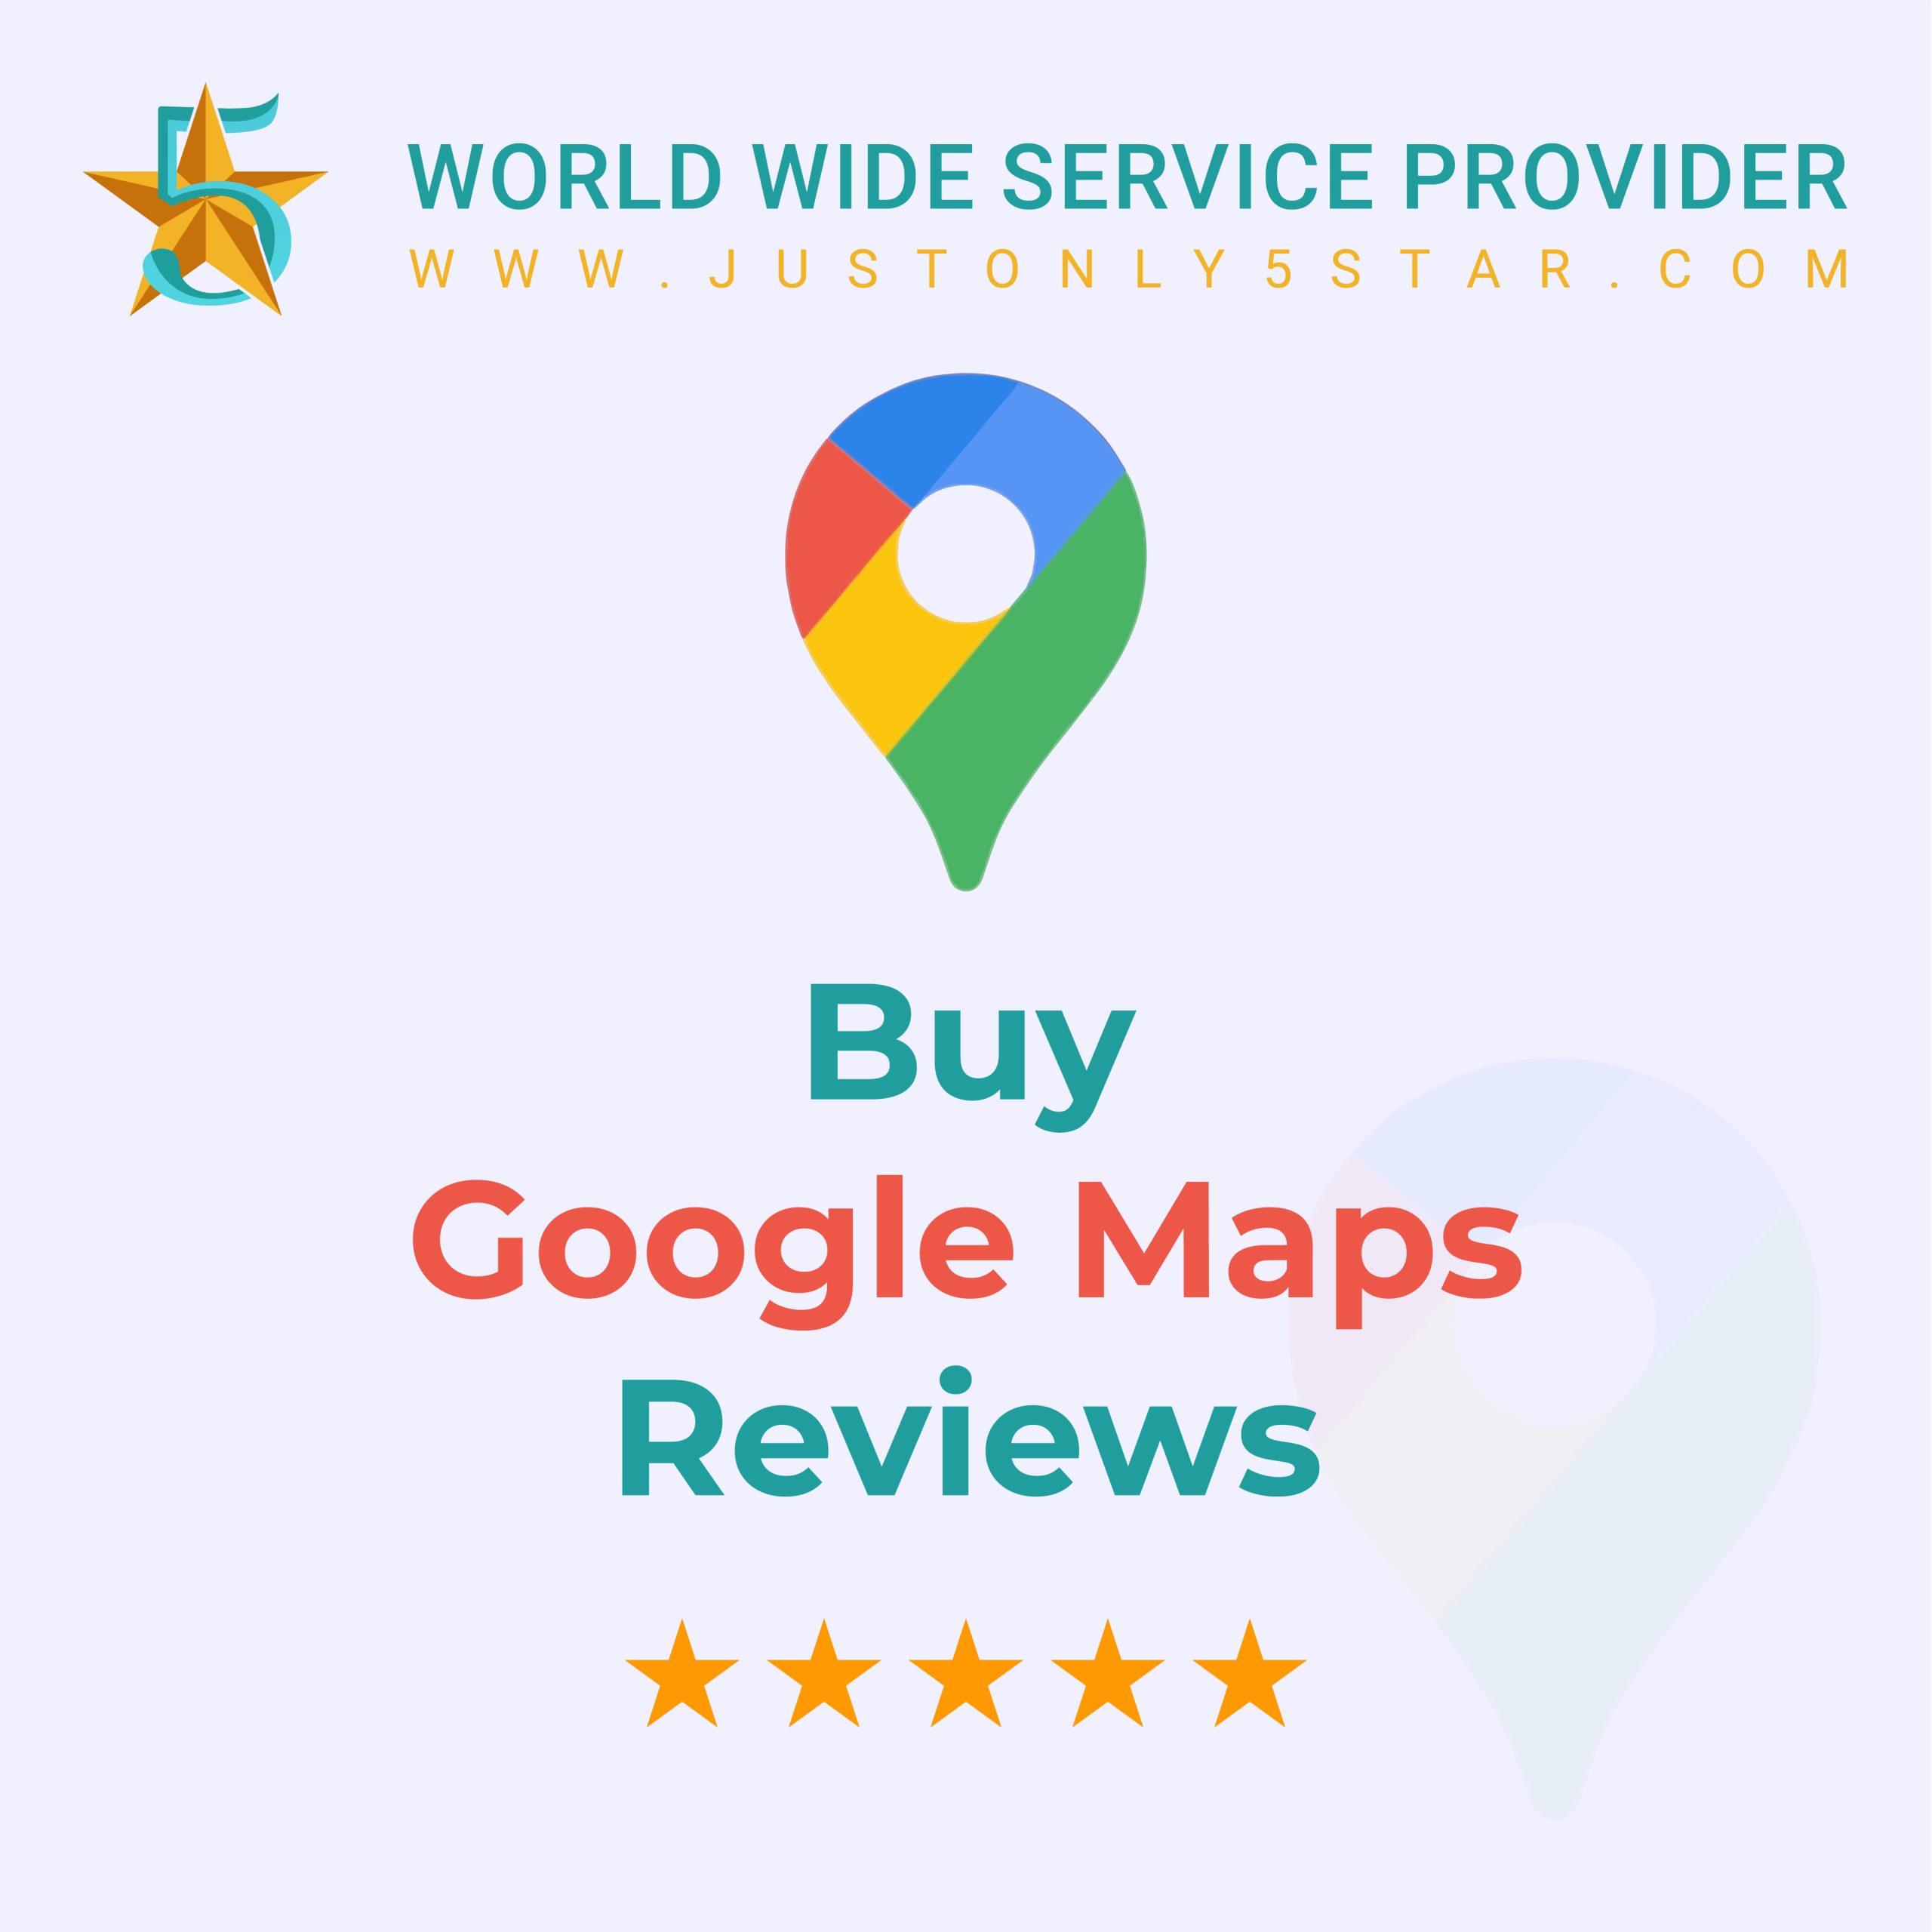 Google Maps Reviews